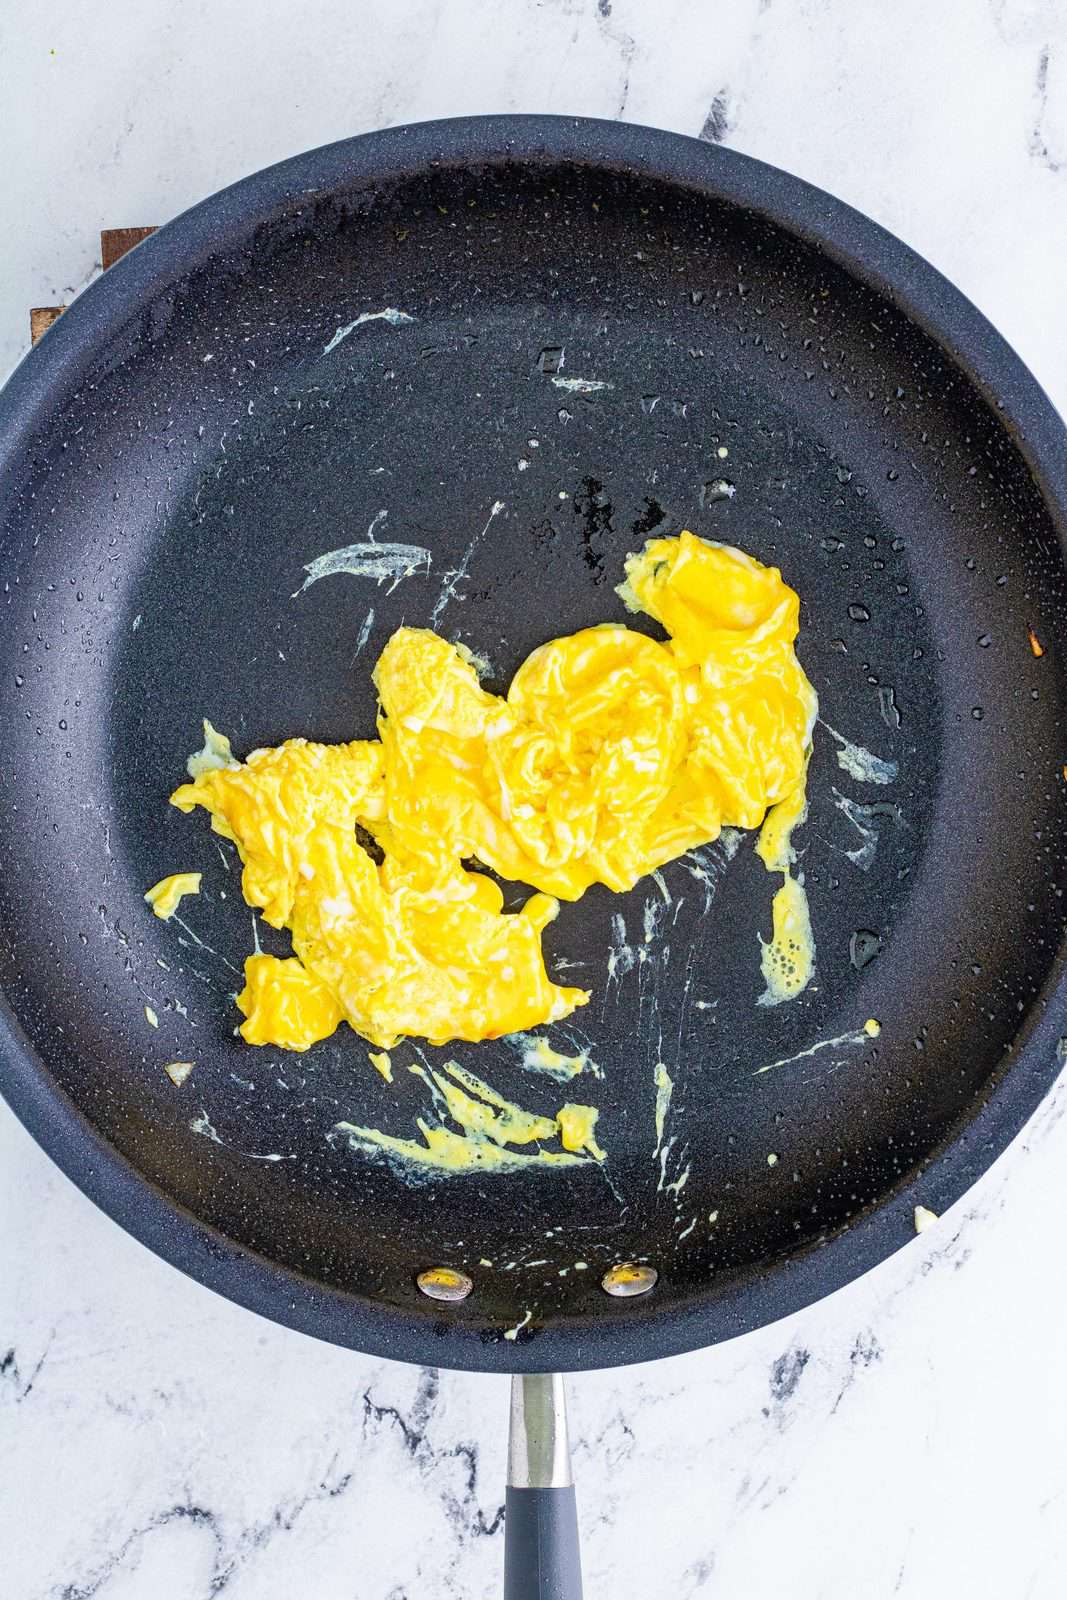 Eggs being scrambled in pan.